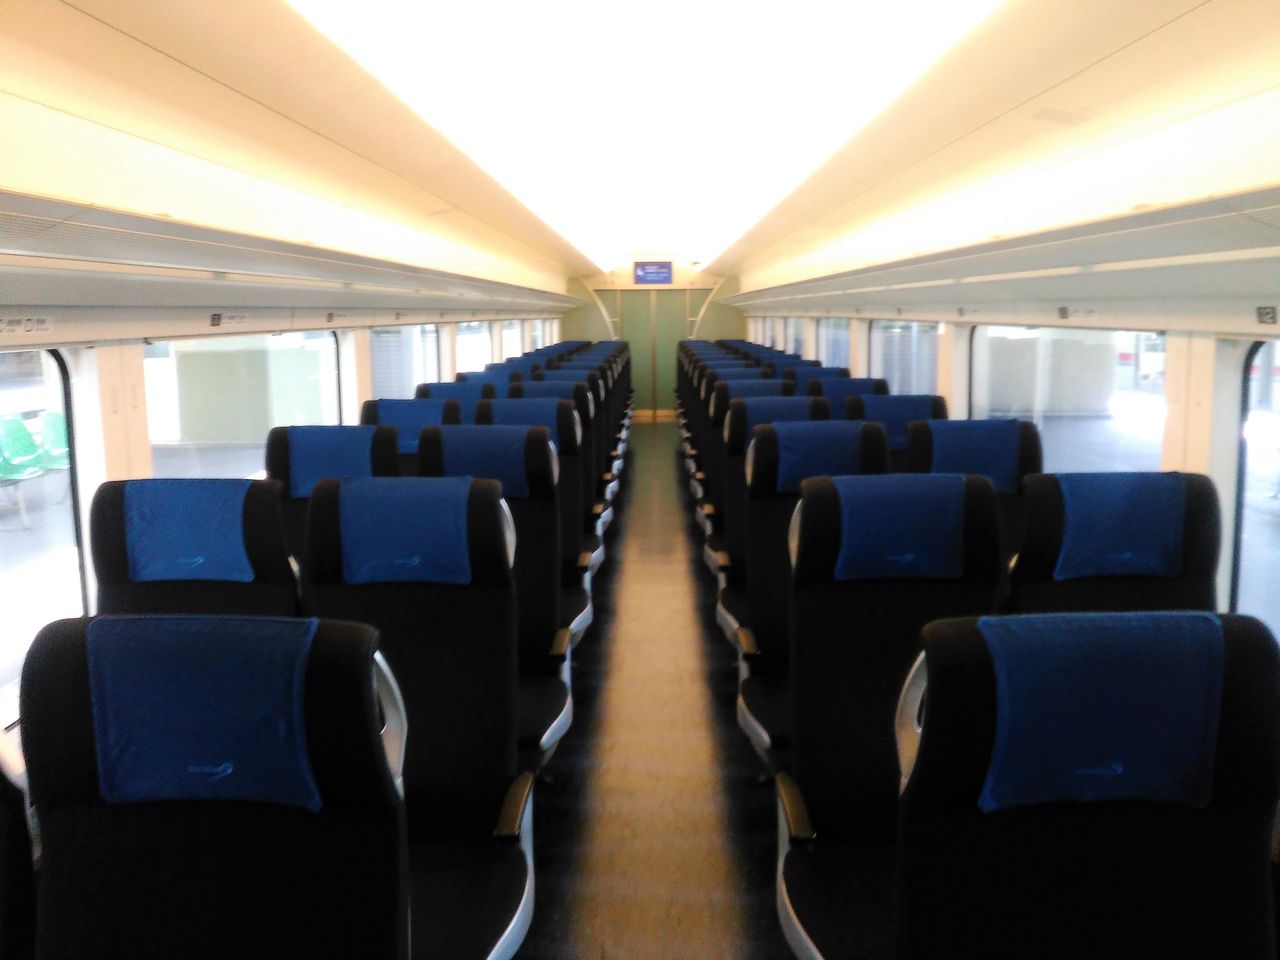 京成の通勤ライナー モーニングライナー64号 京成成田から上野まで乗車してきました Shinoの鉄道旅行 ホテル宿泊備忘録